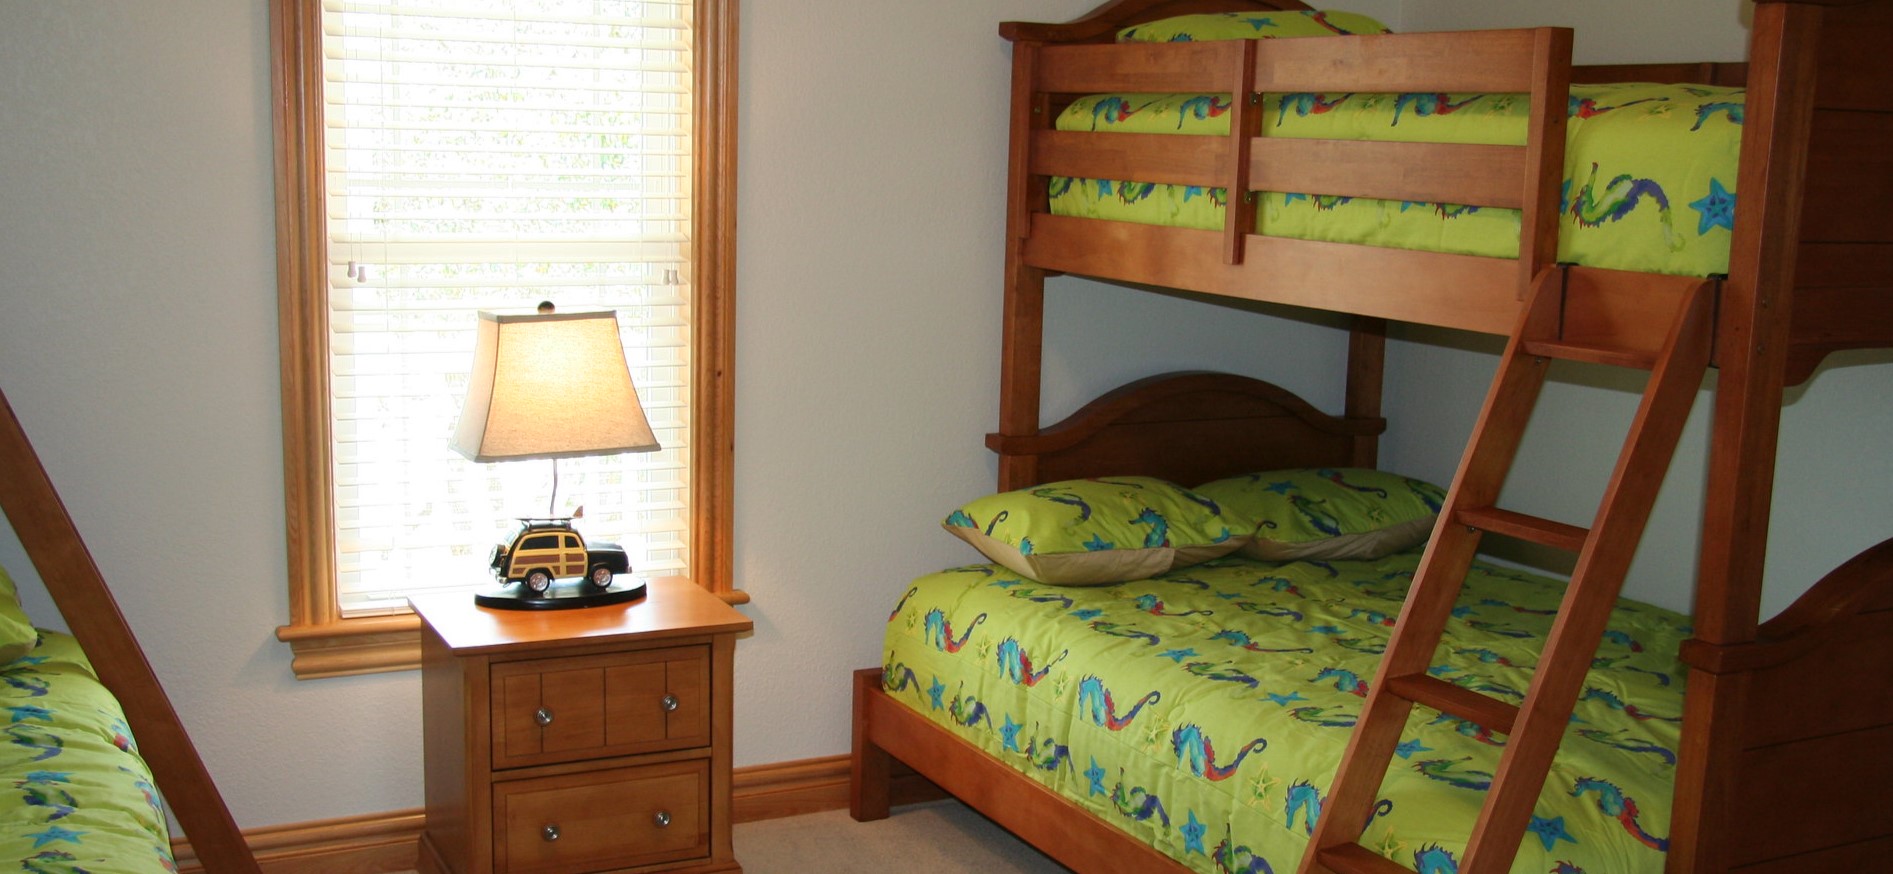 Под цвет кровати можно подобрать тумбочку и другую мебель для детской